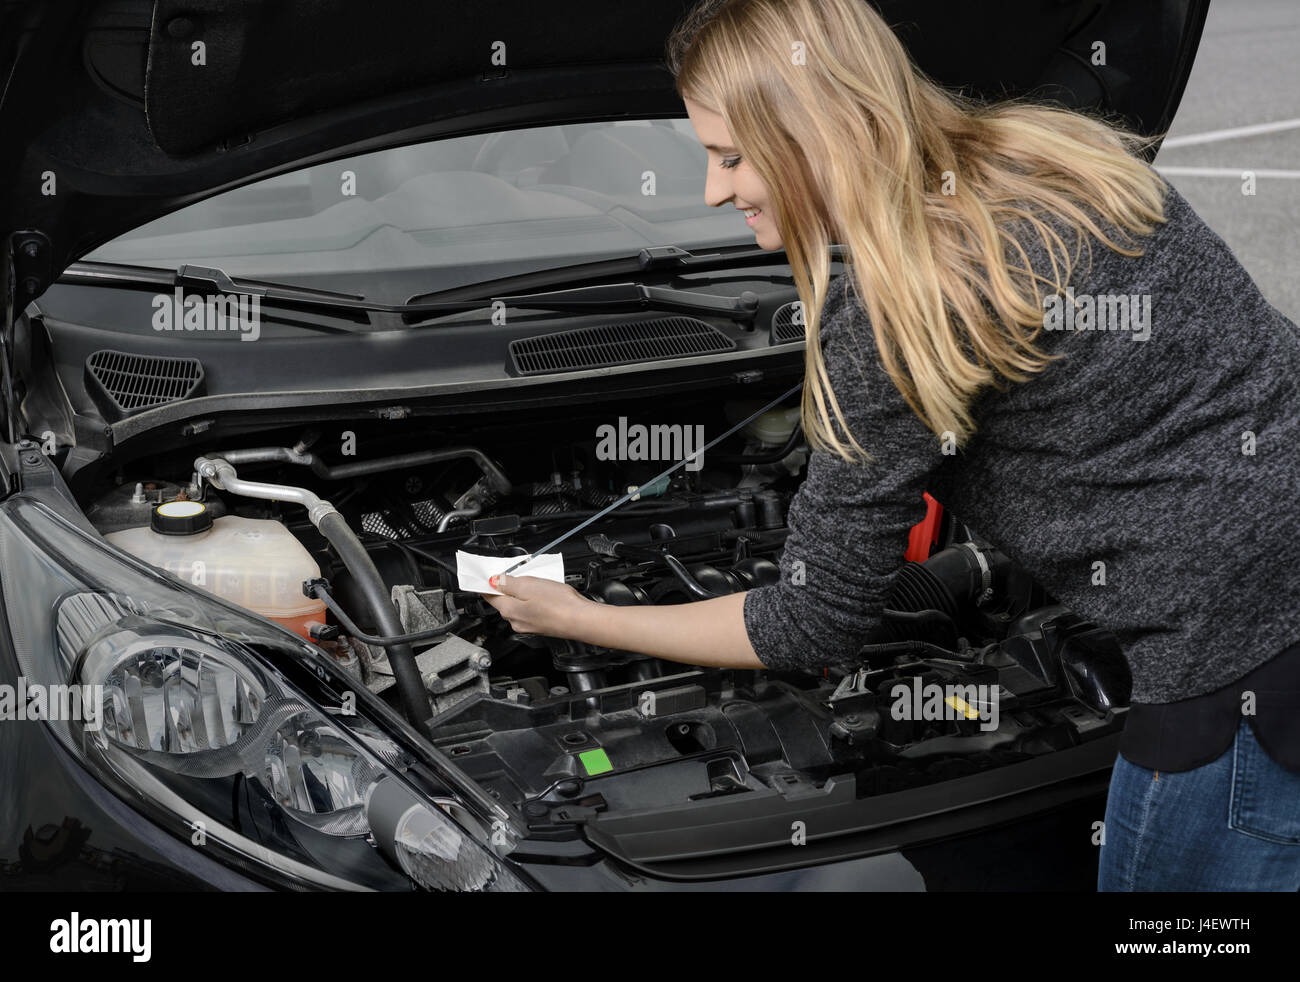 La vérification du niveau d'huile sur la jauge dans le compartiment moteur d'une  voiture Photo Stock - Alamy